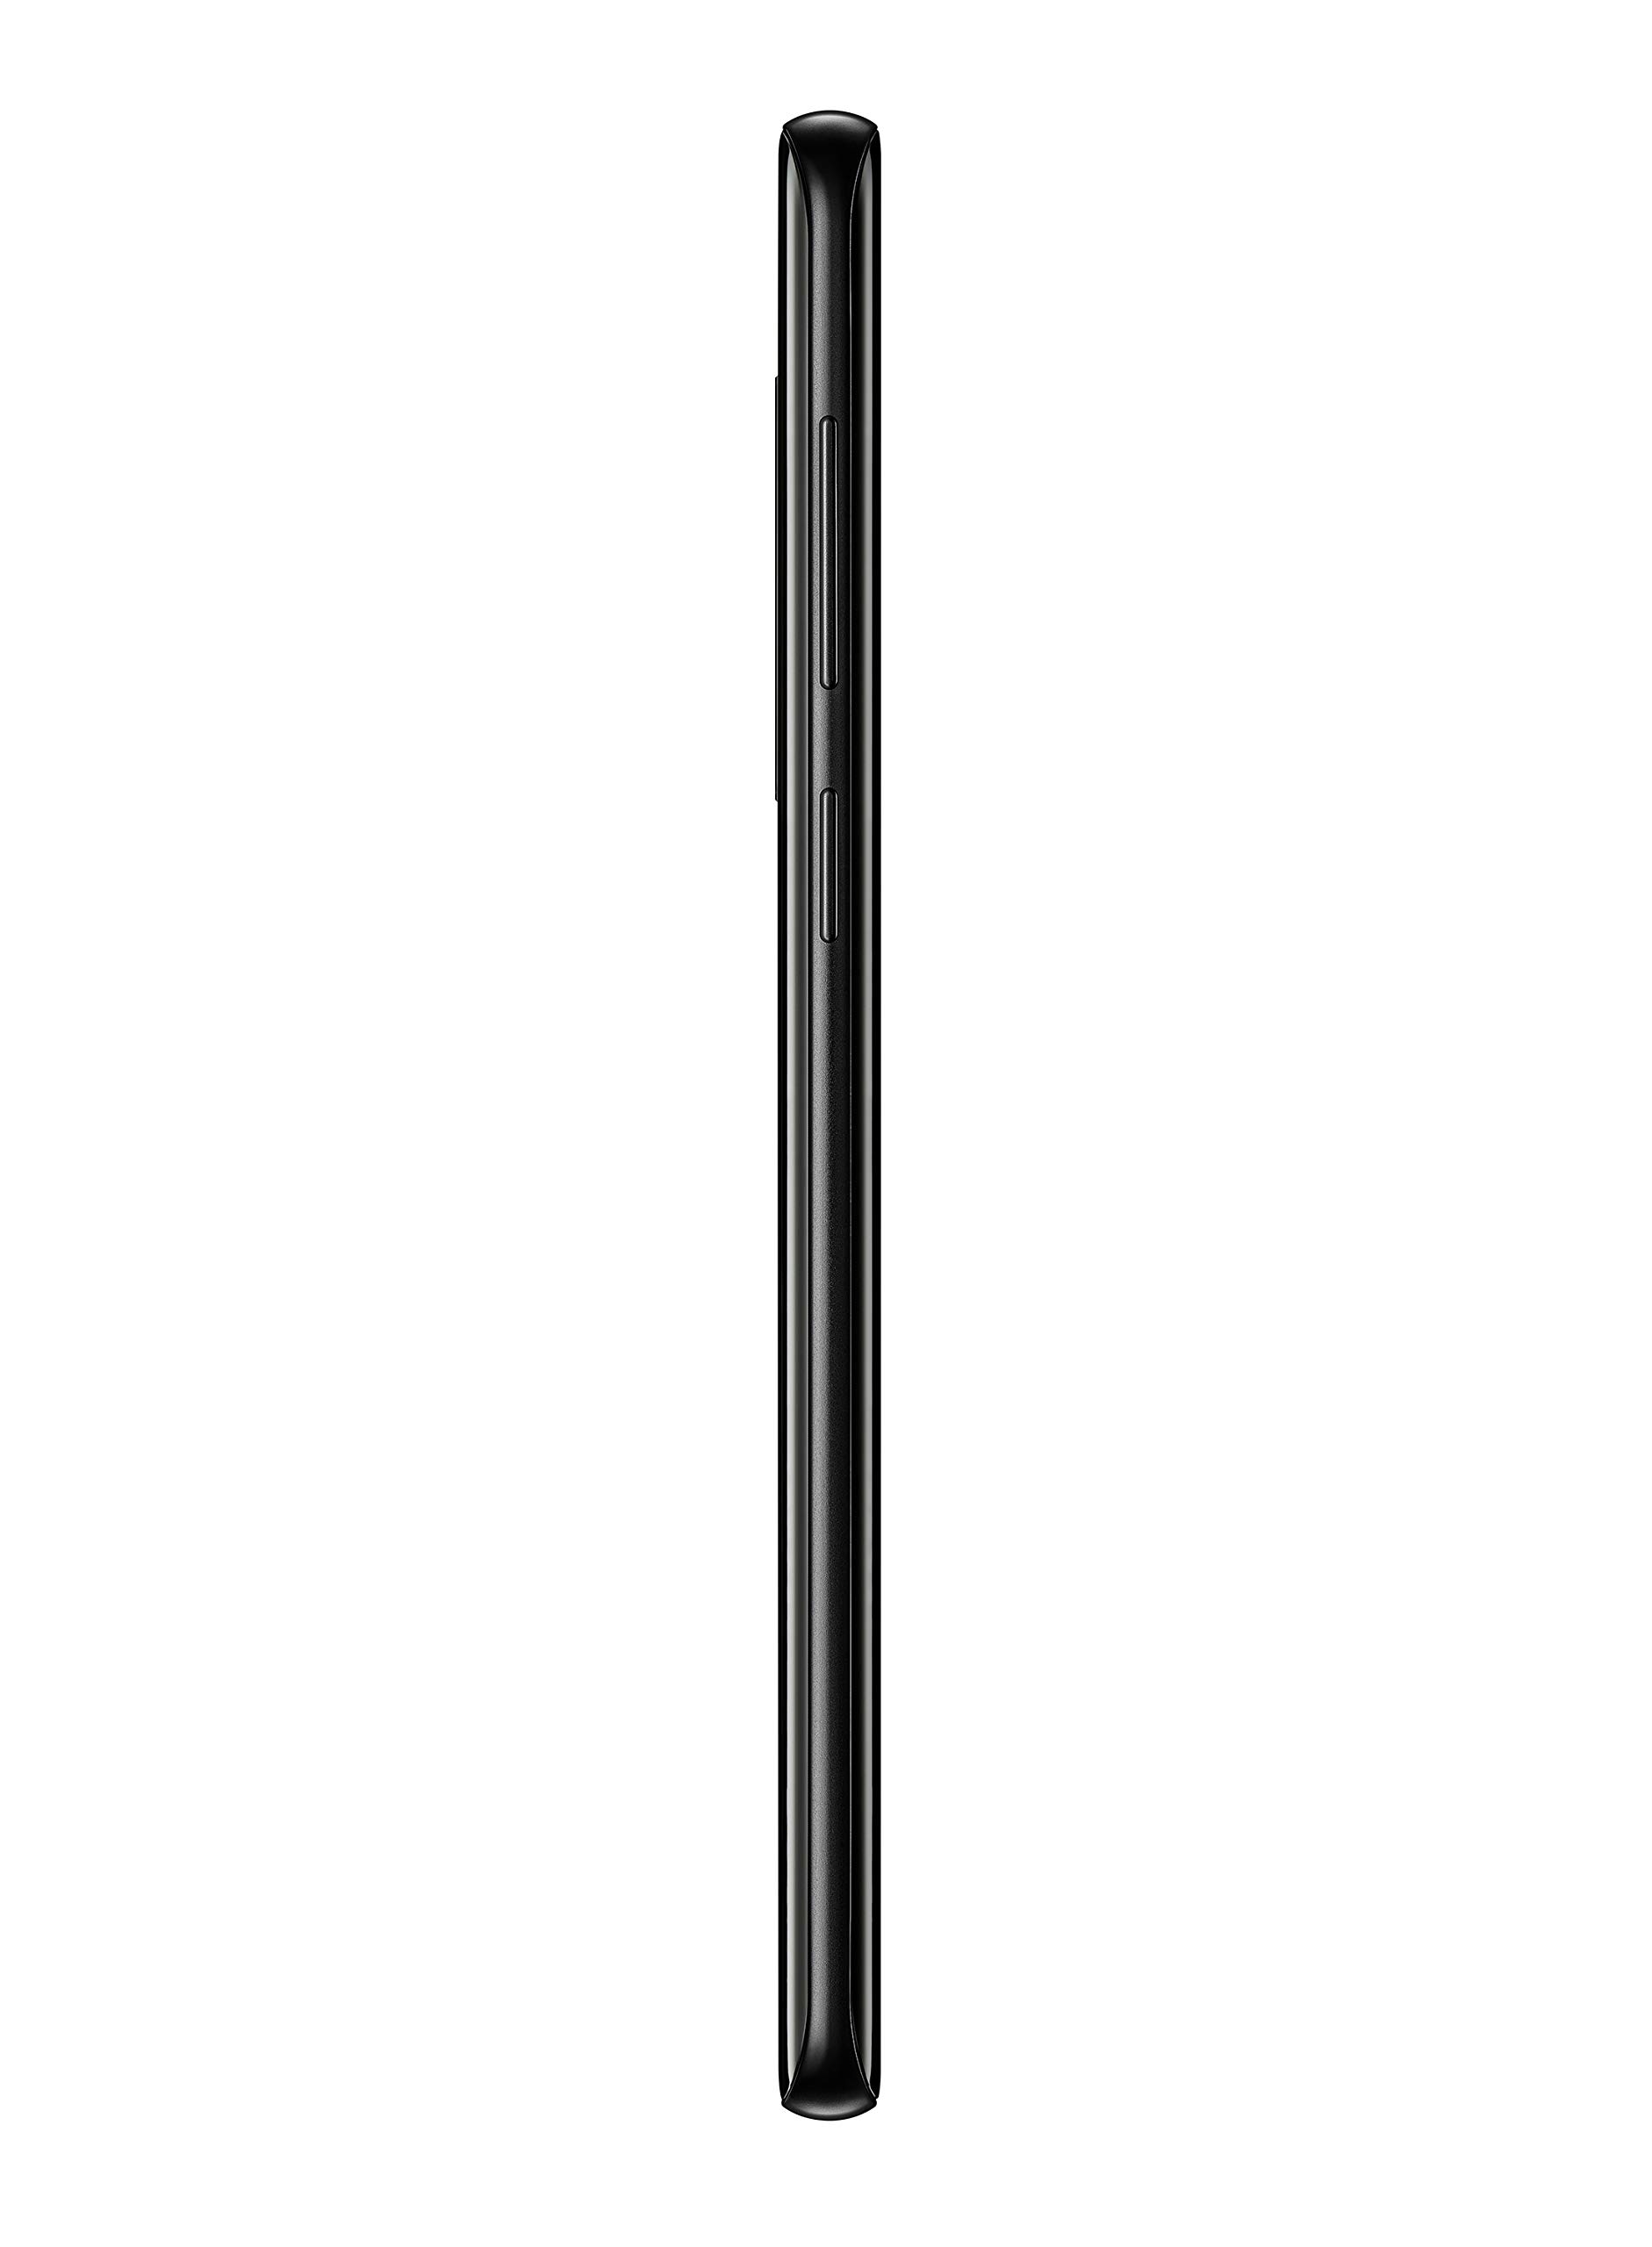 Samsung Galaxy S9+, 64GB, Midnight Black - For Verizon (Renewed)